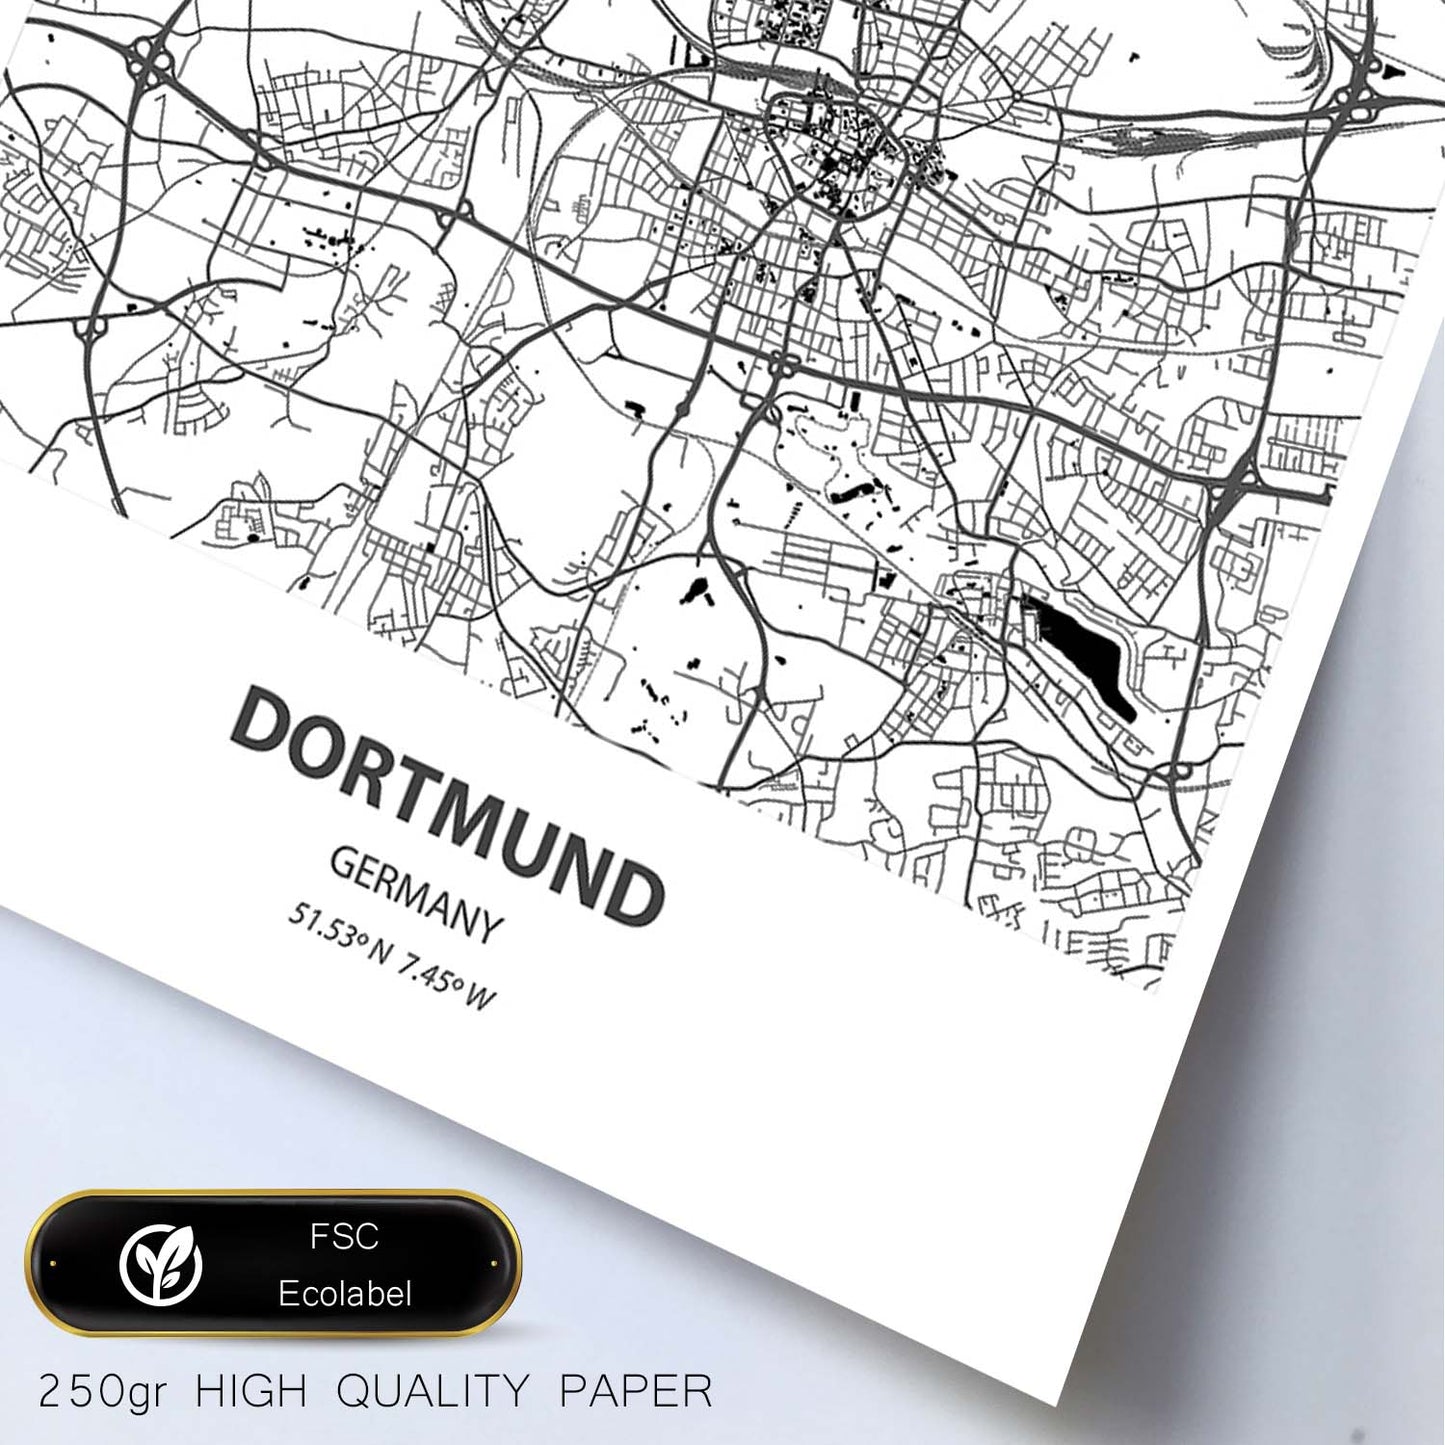 Poster con mapa de Dortmund - Alemania. Láminas de ciudades de Alemania con mares y ríos en color negro.-Artwork-Nacnic-Nacnic Estudio SL